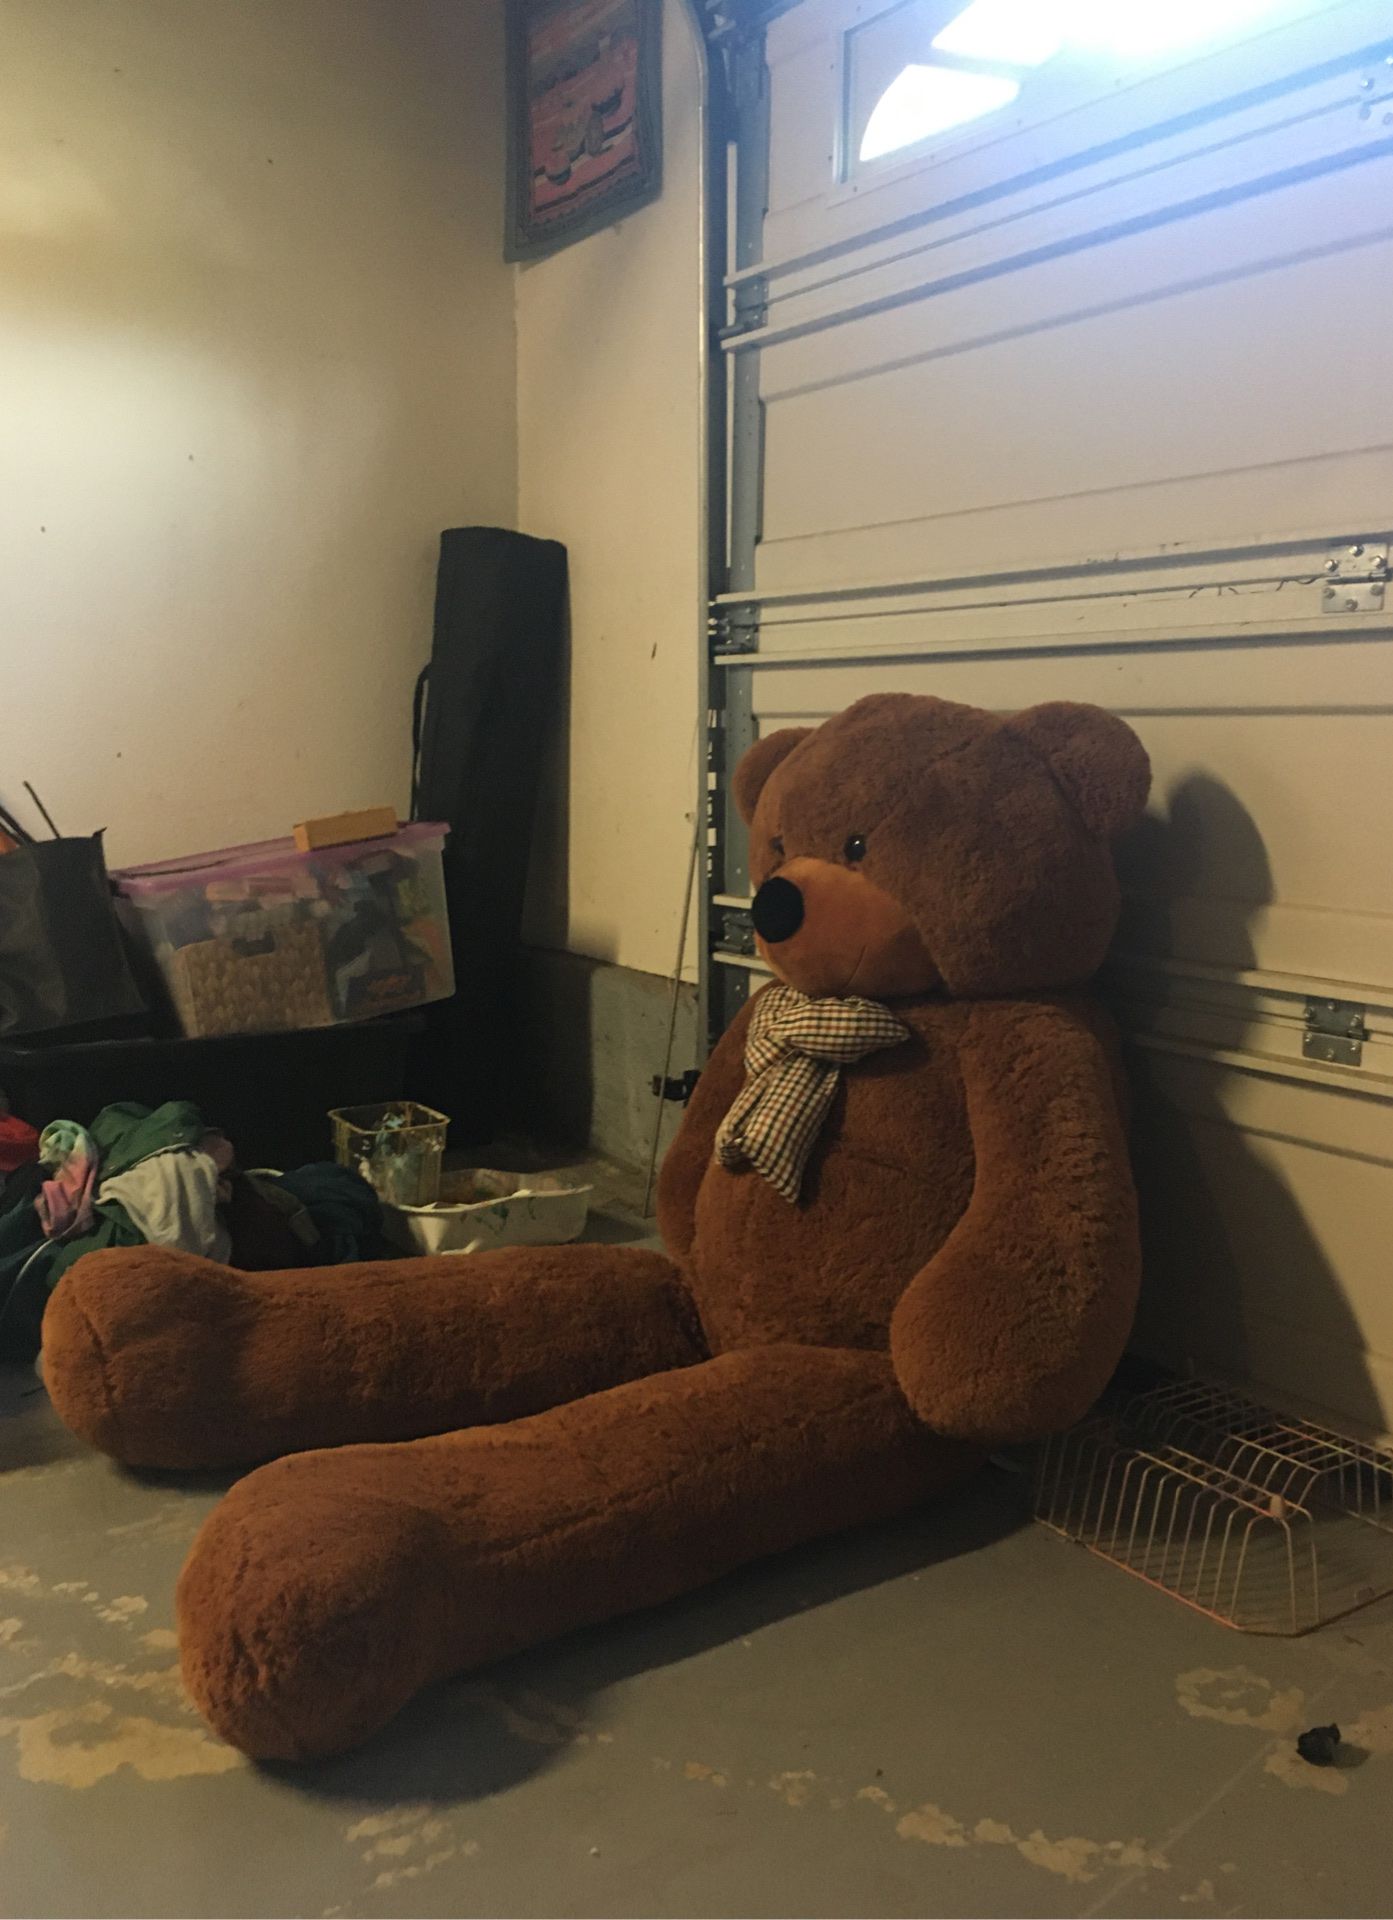 Giant Teddy Bear 6'2"